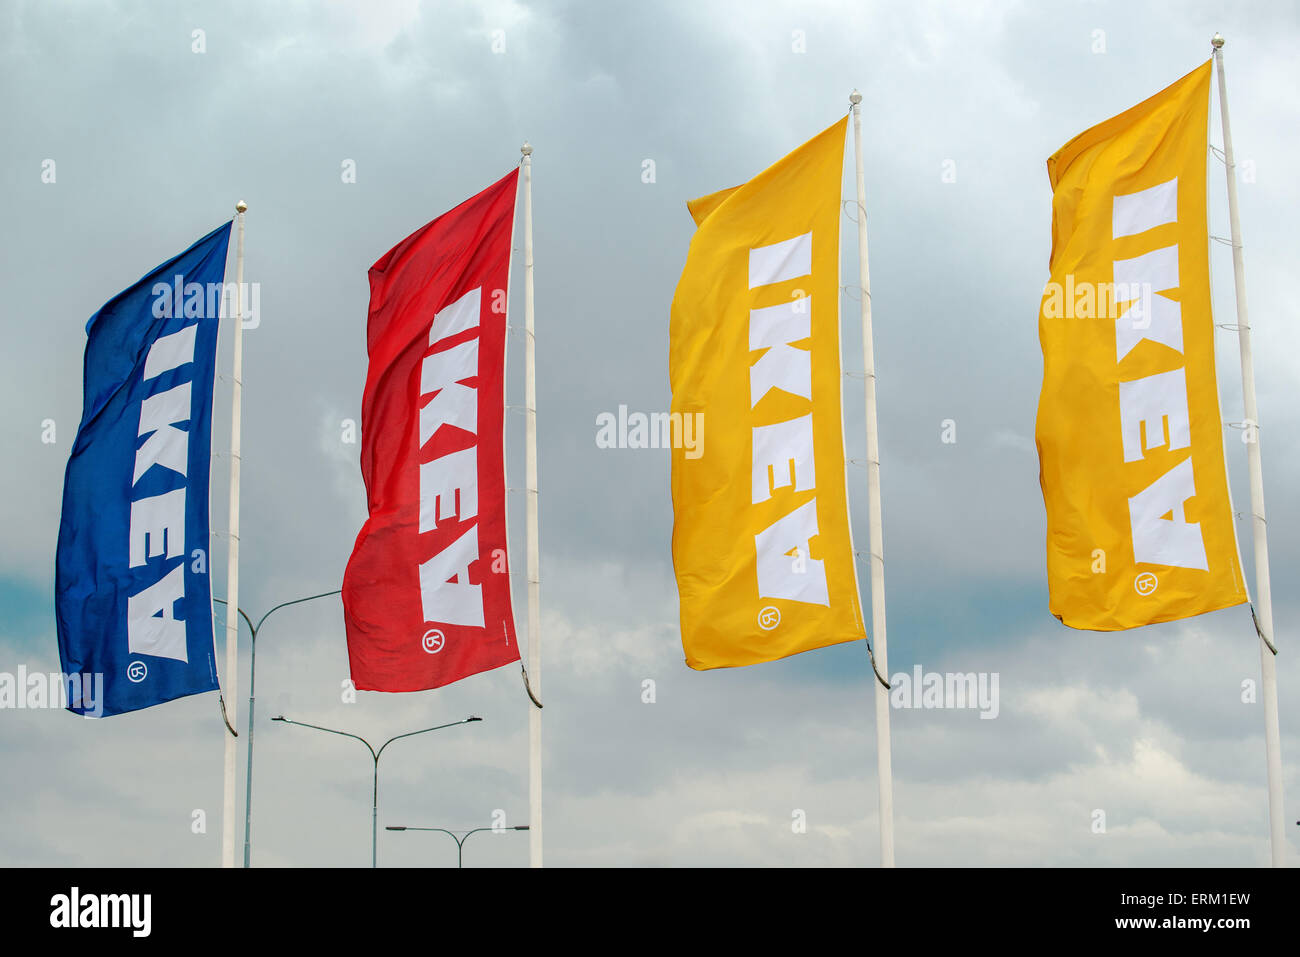 SZEGED, Ungarn - 27. Mai 2015: Ikea Banner wehenden Wind. IKEA ist berühmten multinationales Unternehmen, das entwickelt und vertreibt Ready-t Stockfoto